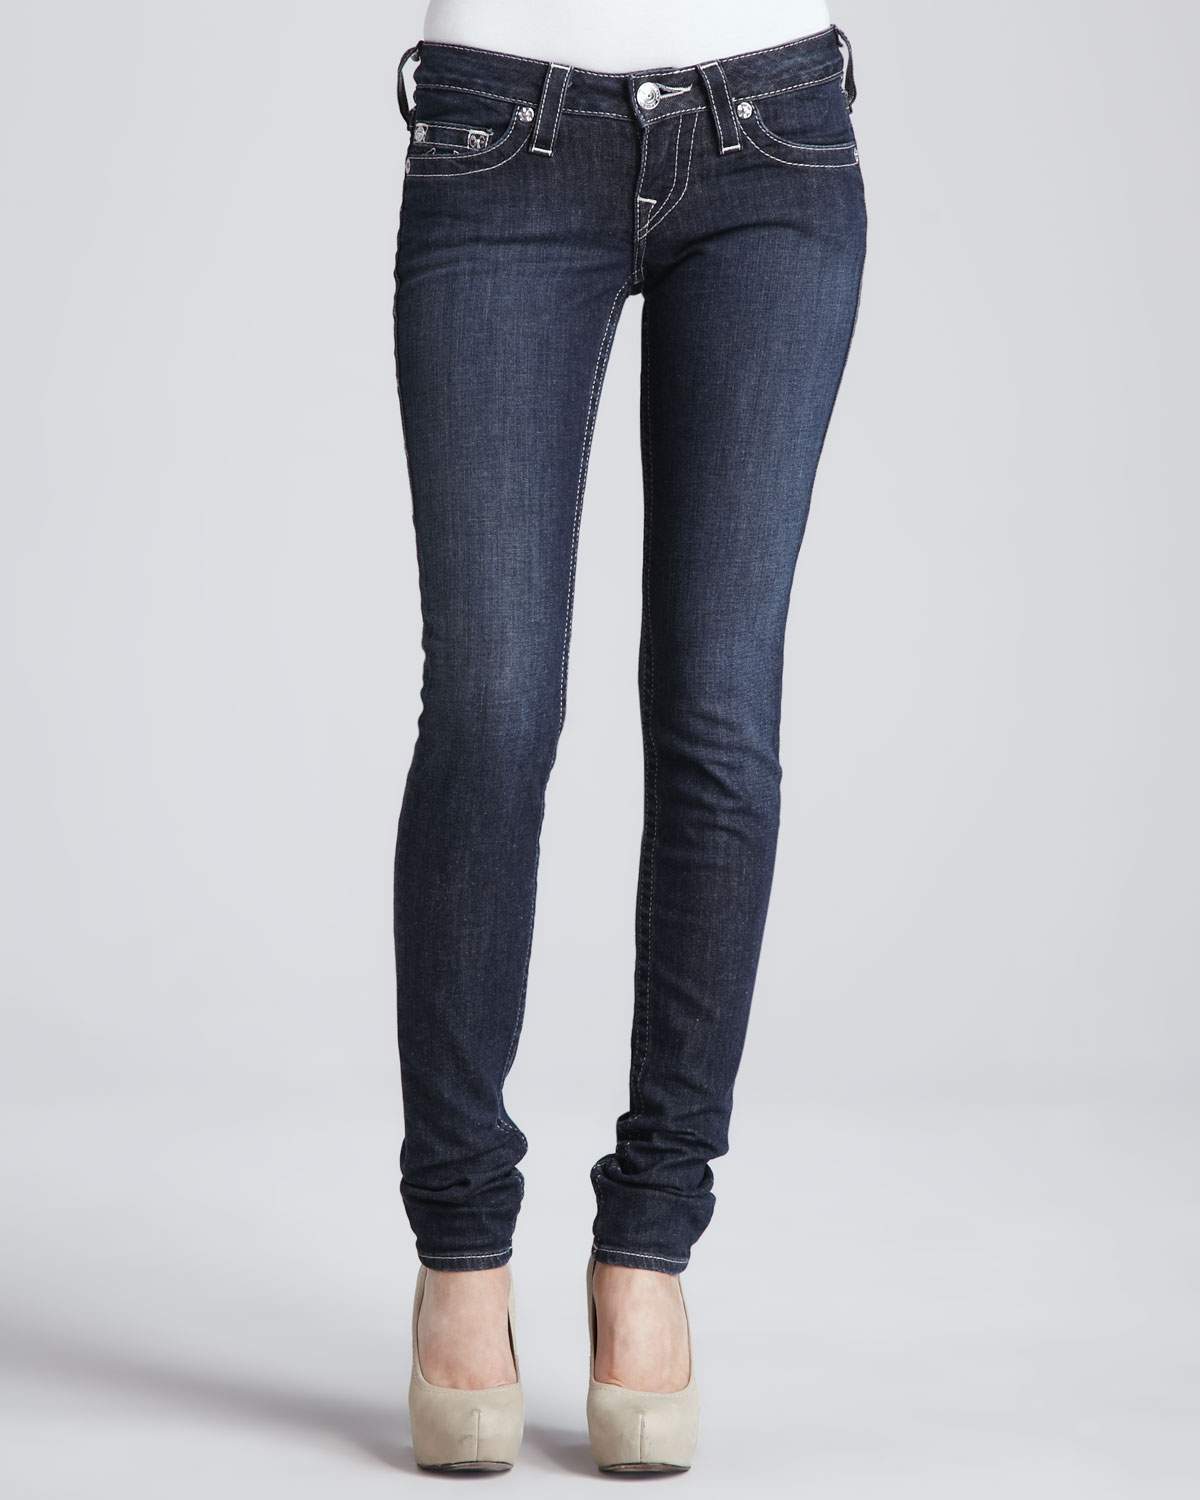 Lyst - True religion Stella Lonestar Low-Rise Skinny Jeans in Blue